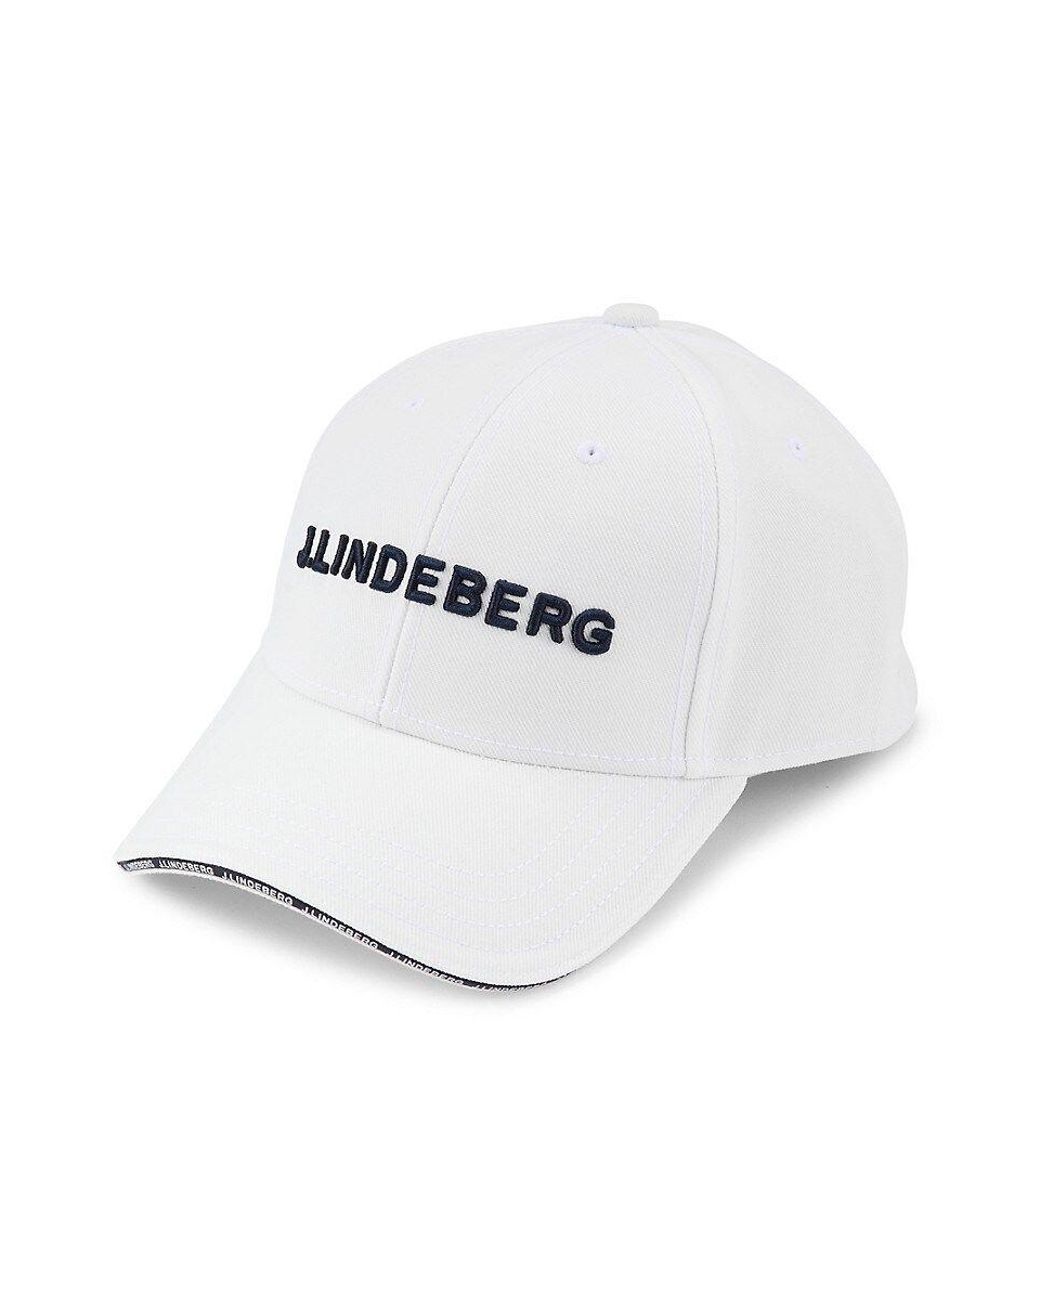 J.Lindeberg J.lindeberg Harry Logo Baseball Cap in White for Men | Lyst